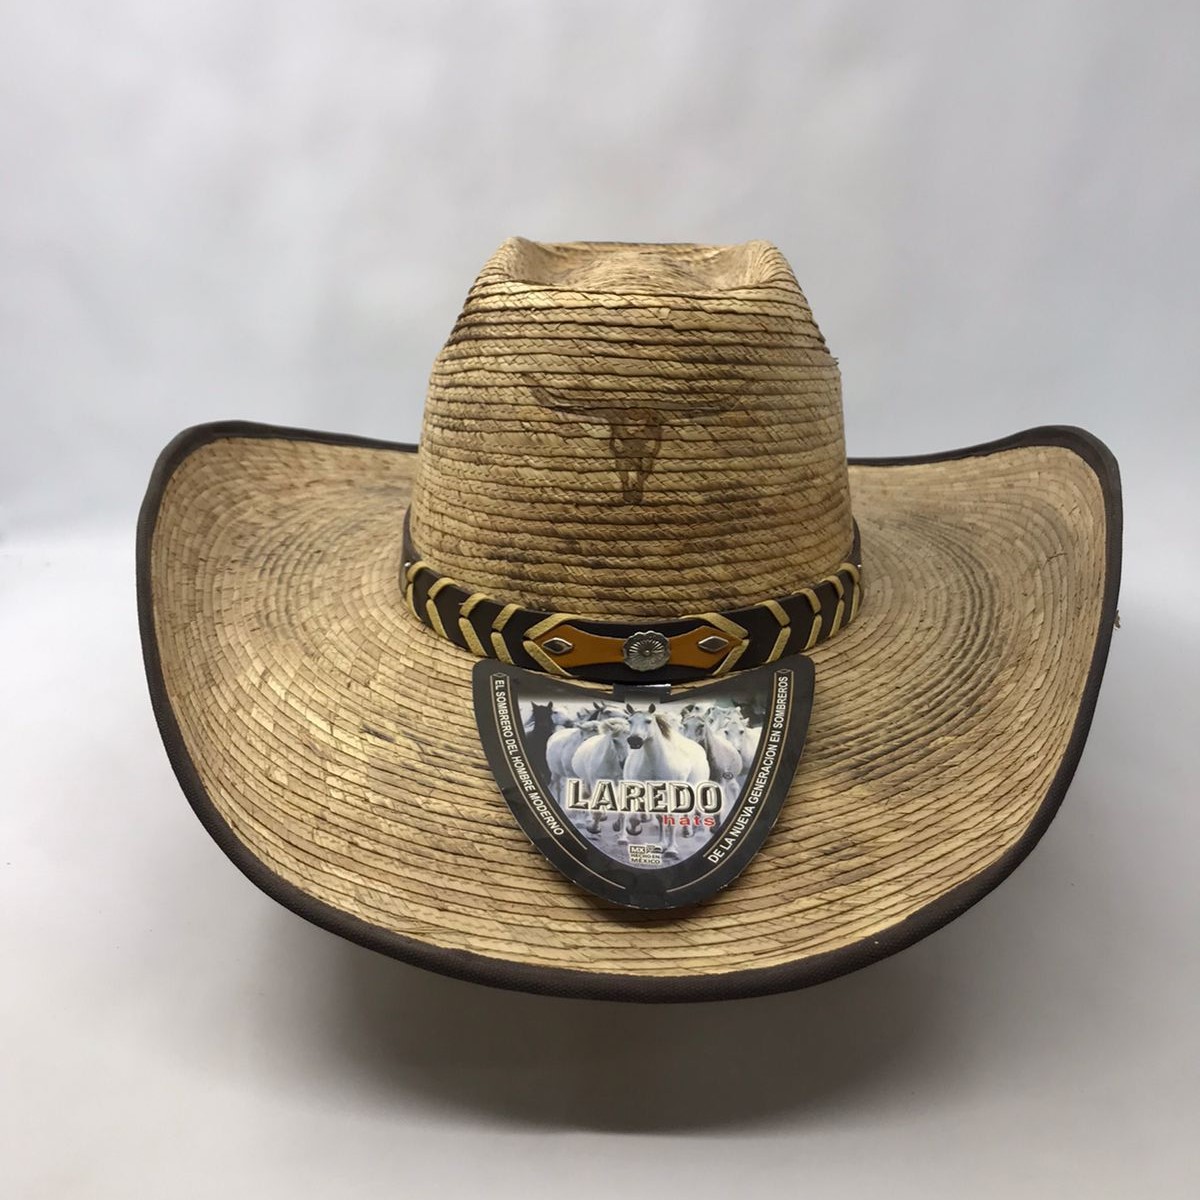 Sombrero de palma economía de horma cuadrada 0192 Laredo Hats Palma Laredo Hats